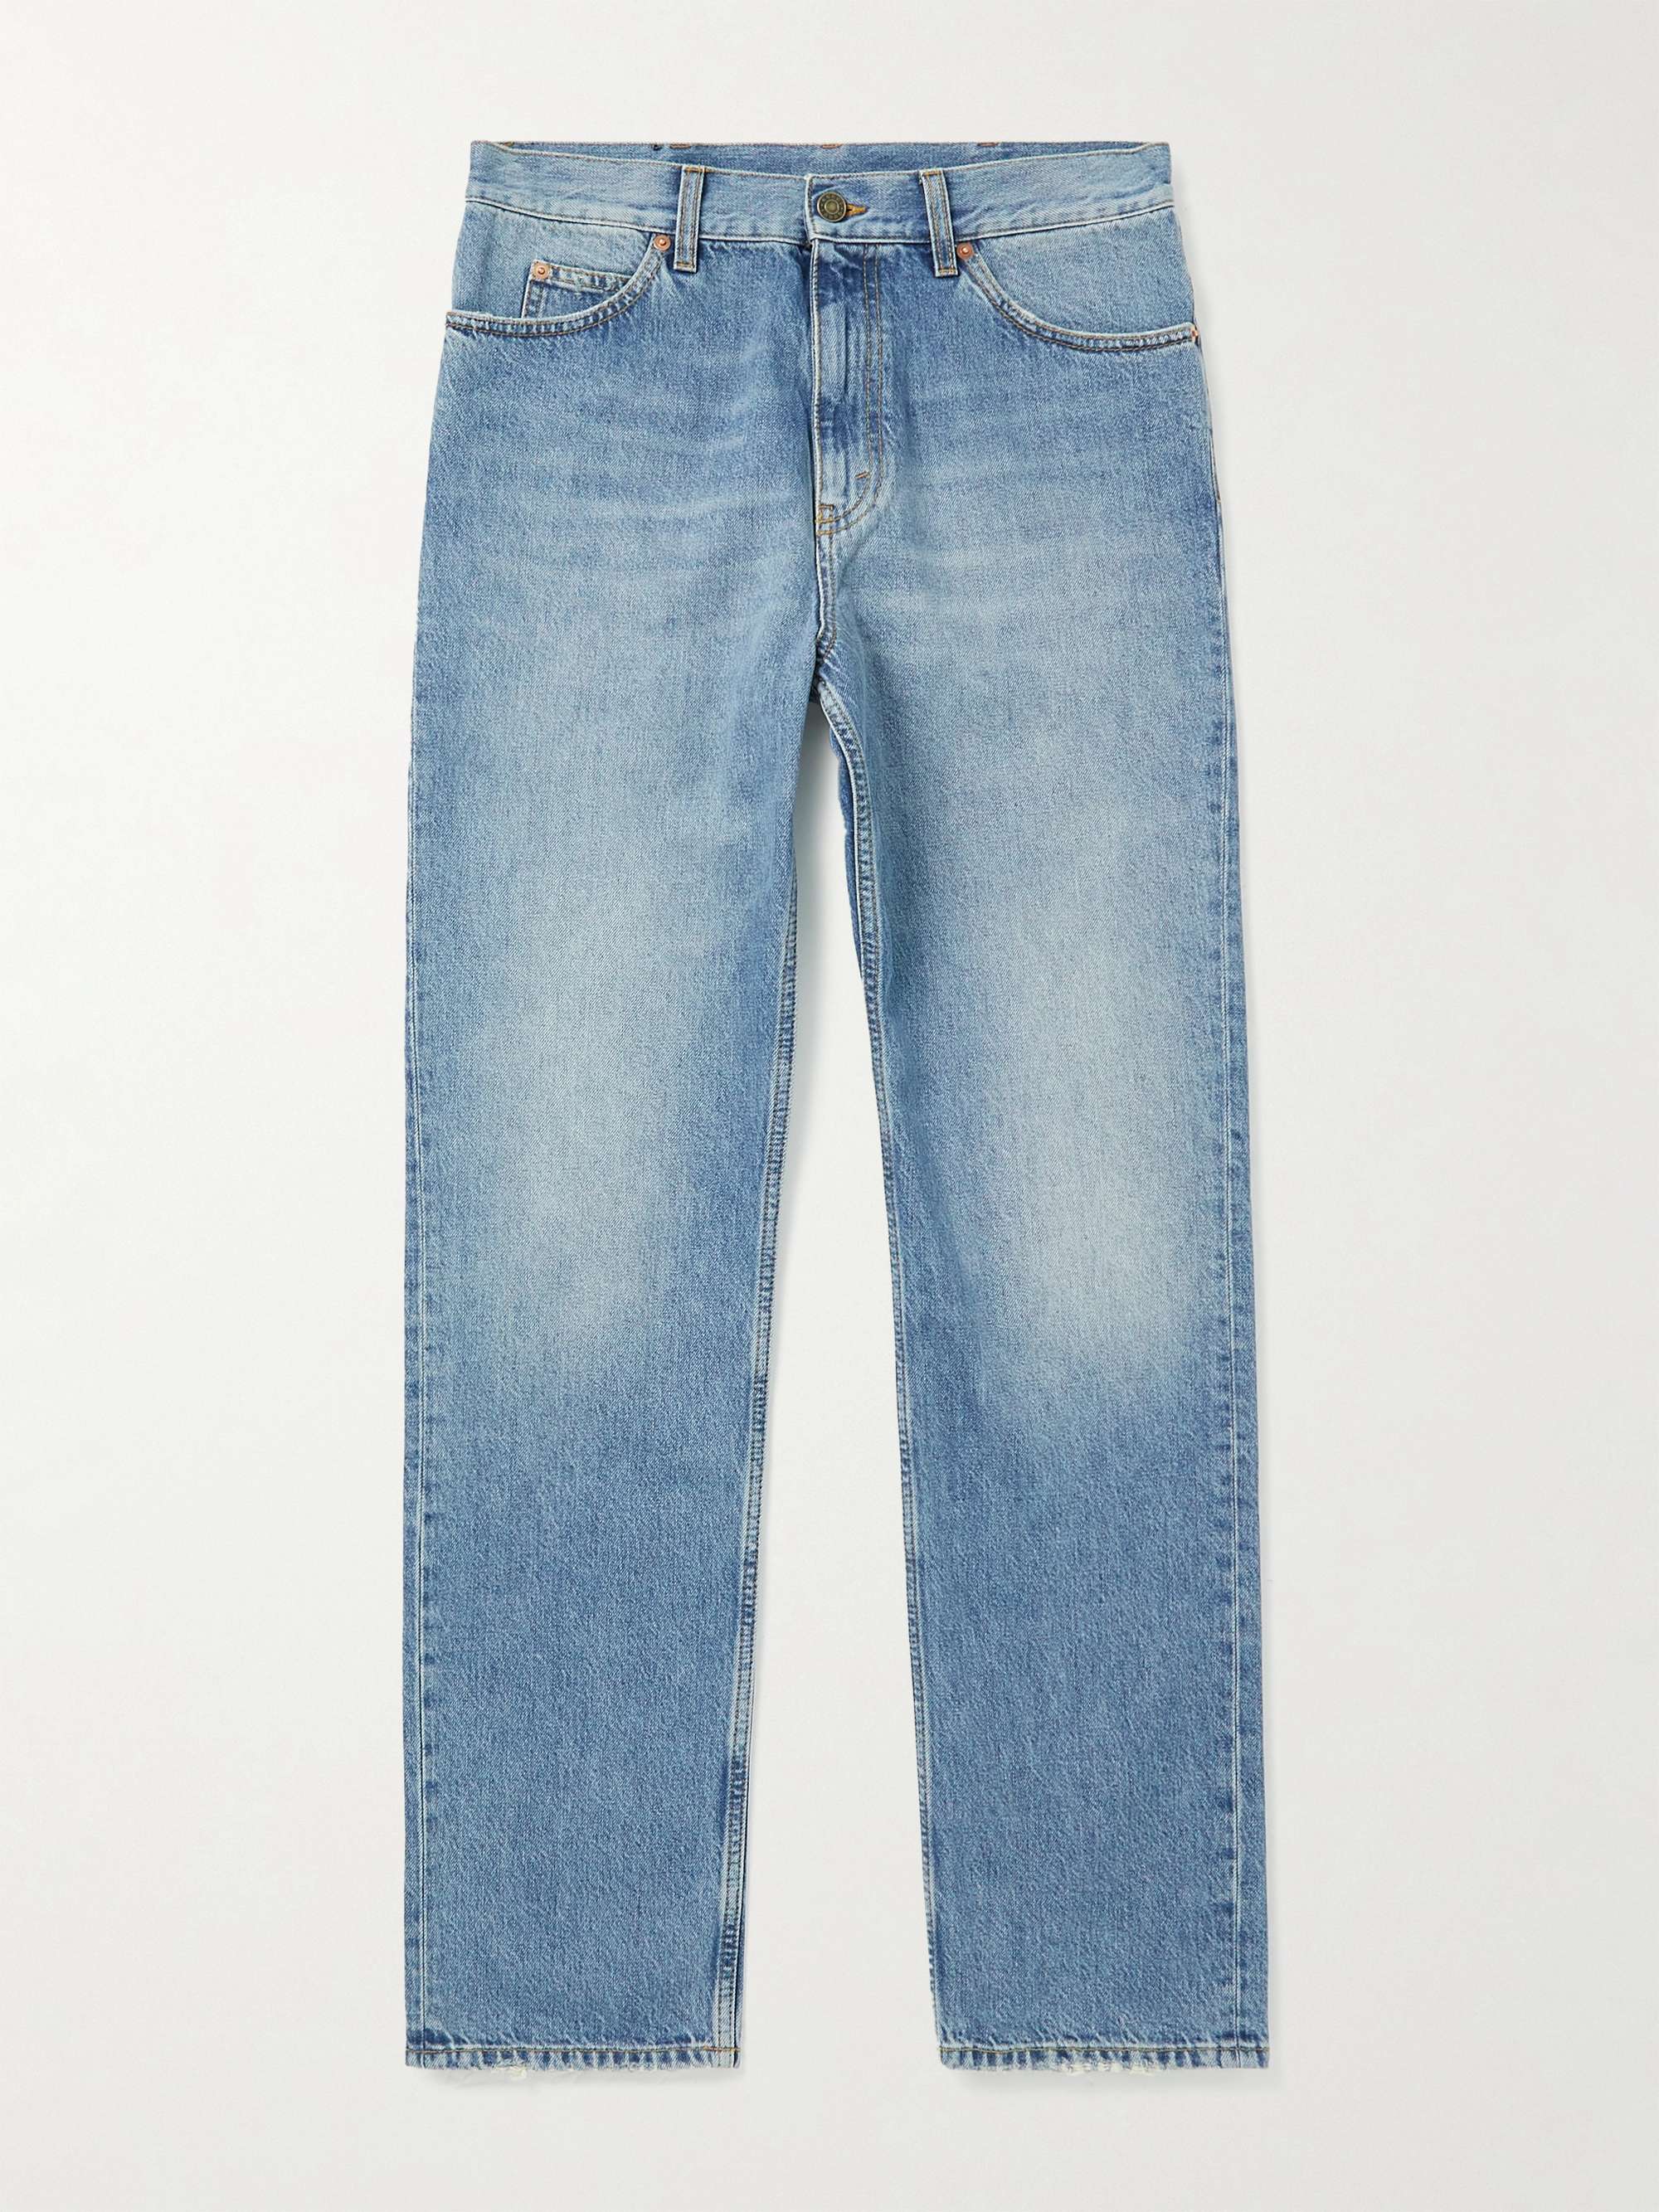 GUCCI Straight-Leg Horsebit-Detailed Jeans | MR PORTER